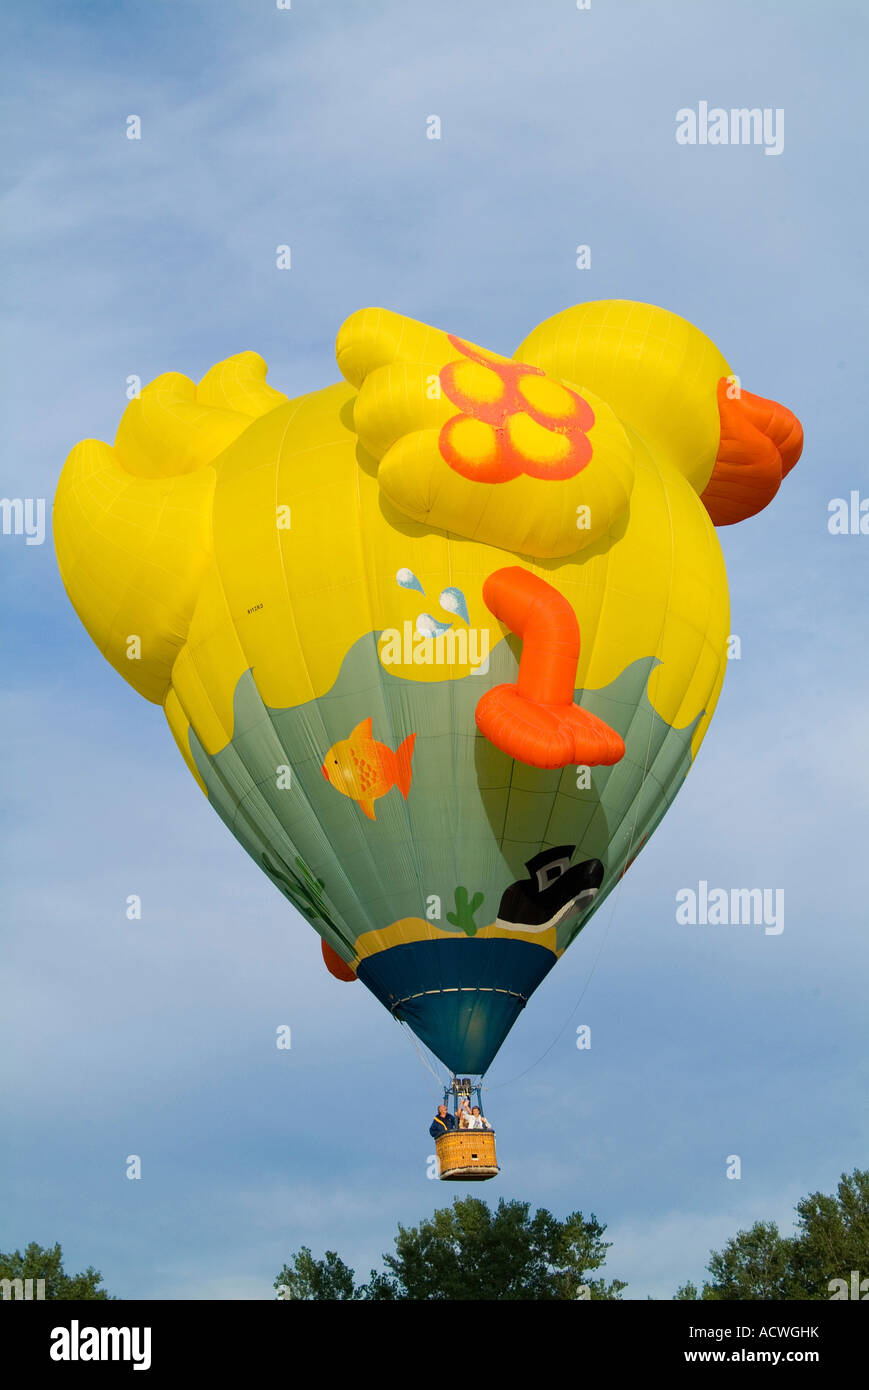 Globos de Aire Caliente con forma de pato volando sobre los árboles  Fotografía de stock - Alamy